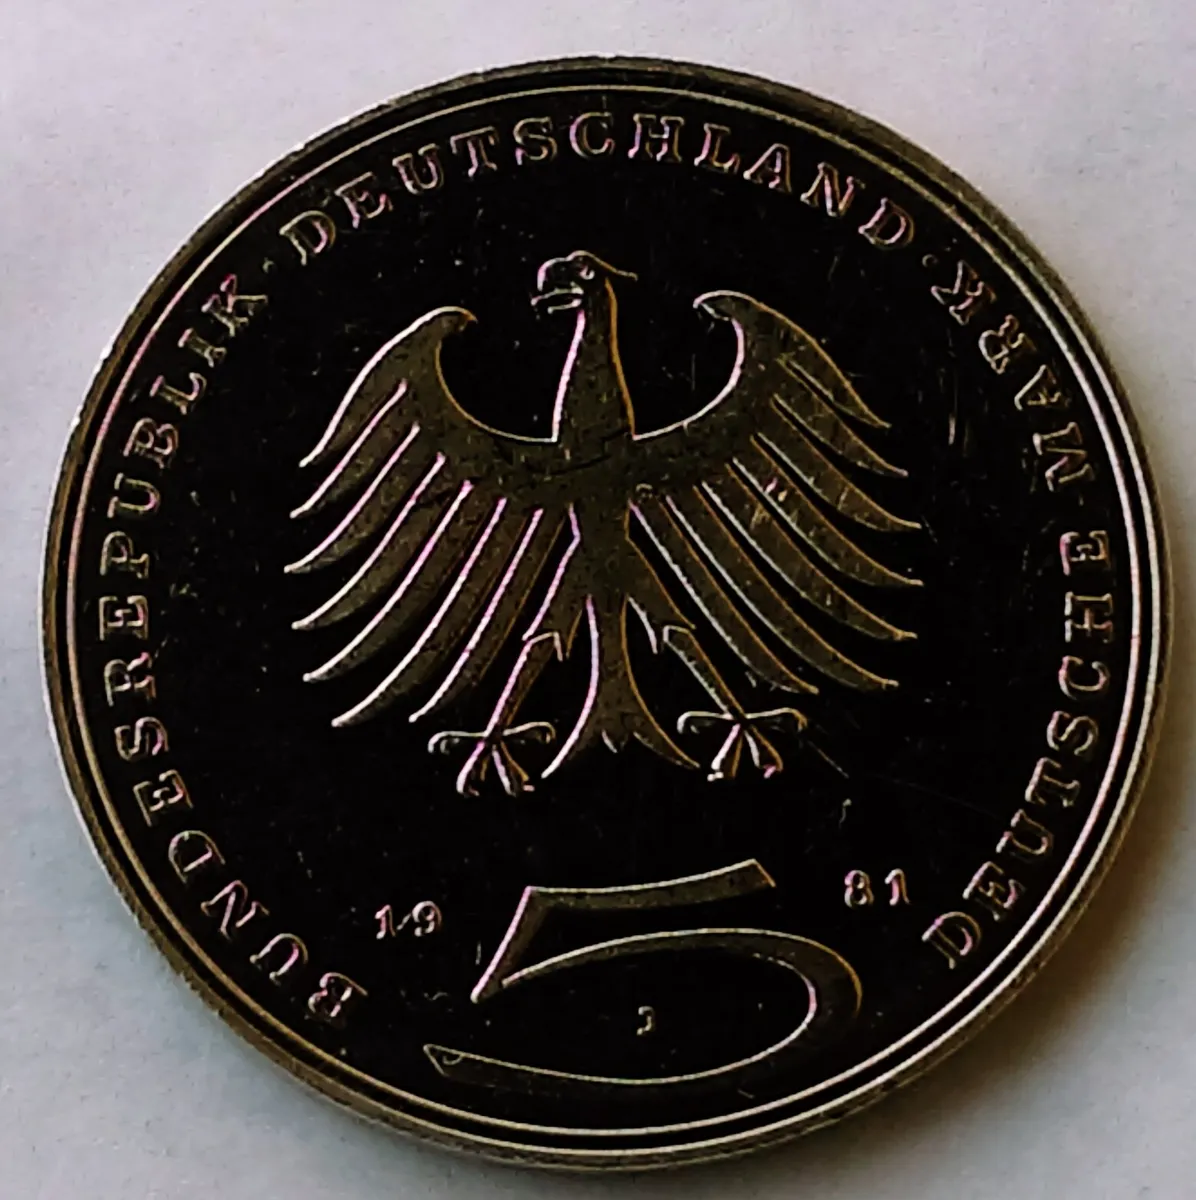 Deutschmark (DEM): Overview of German Currency